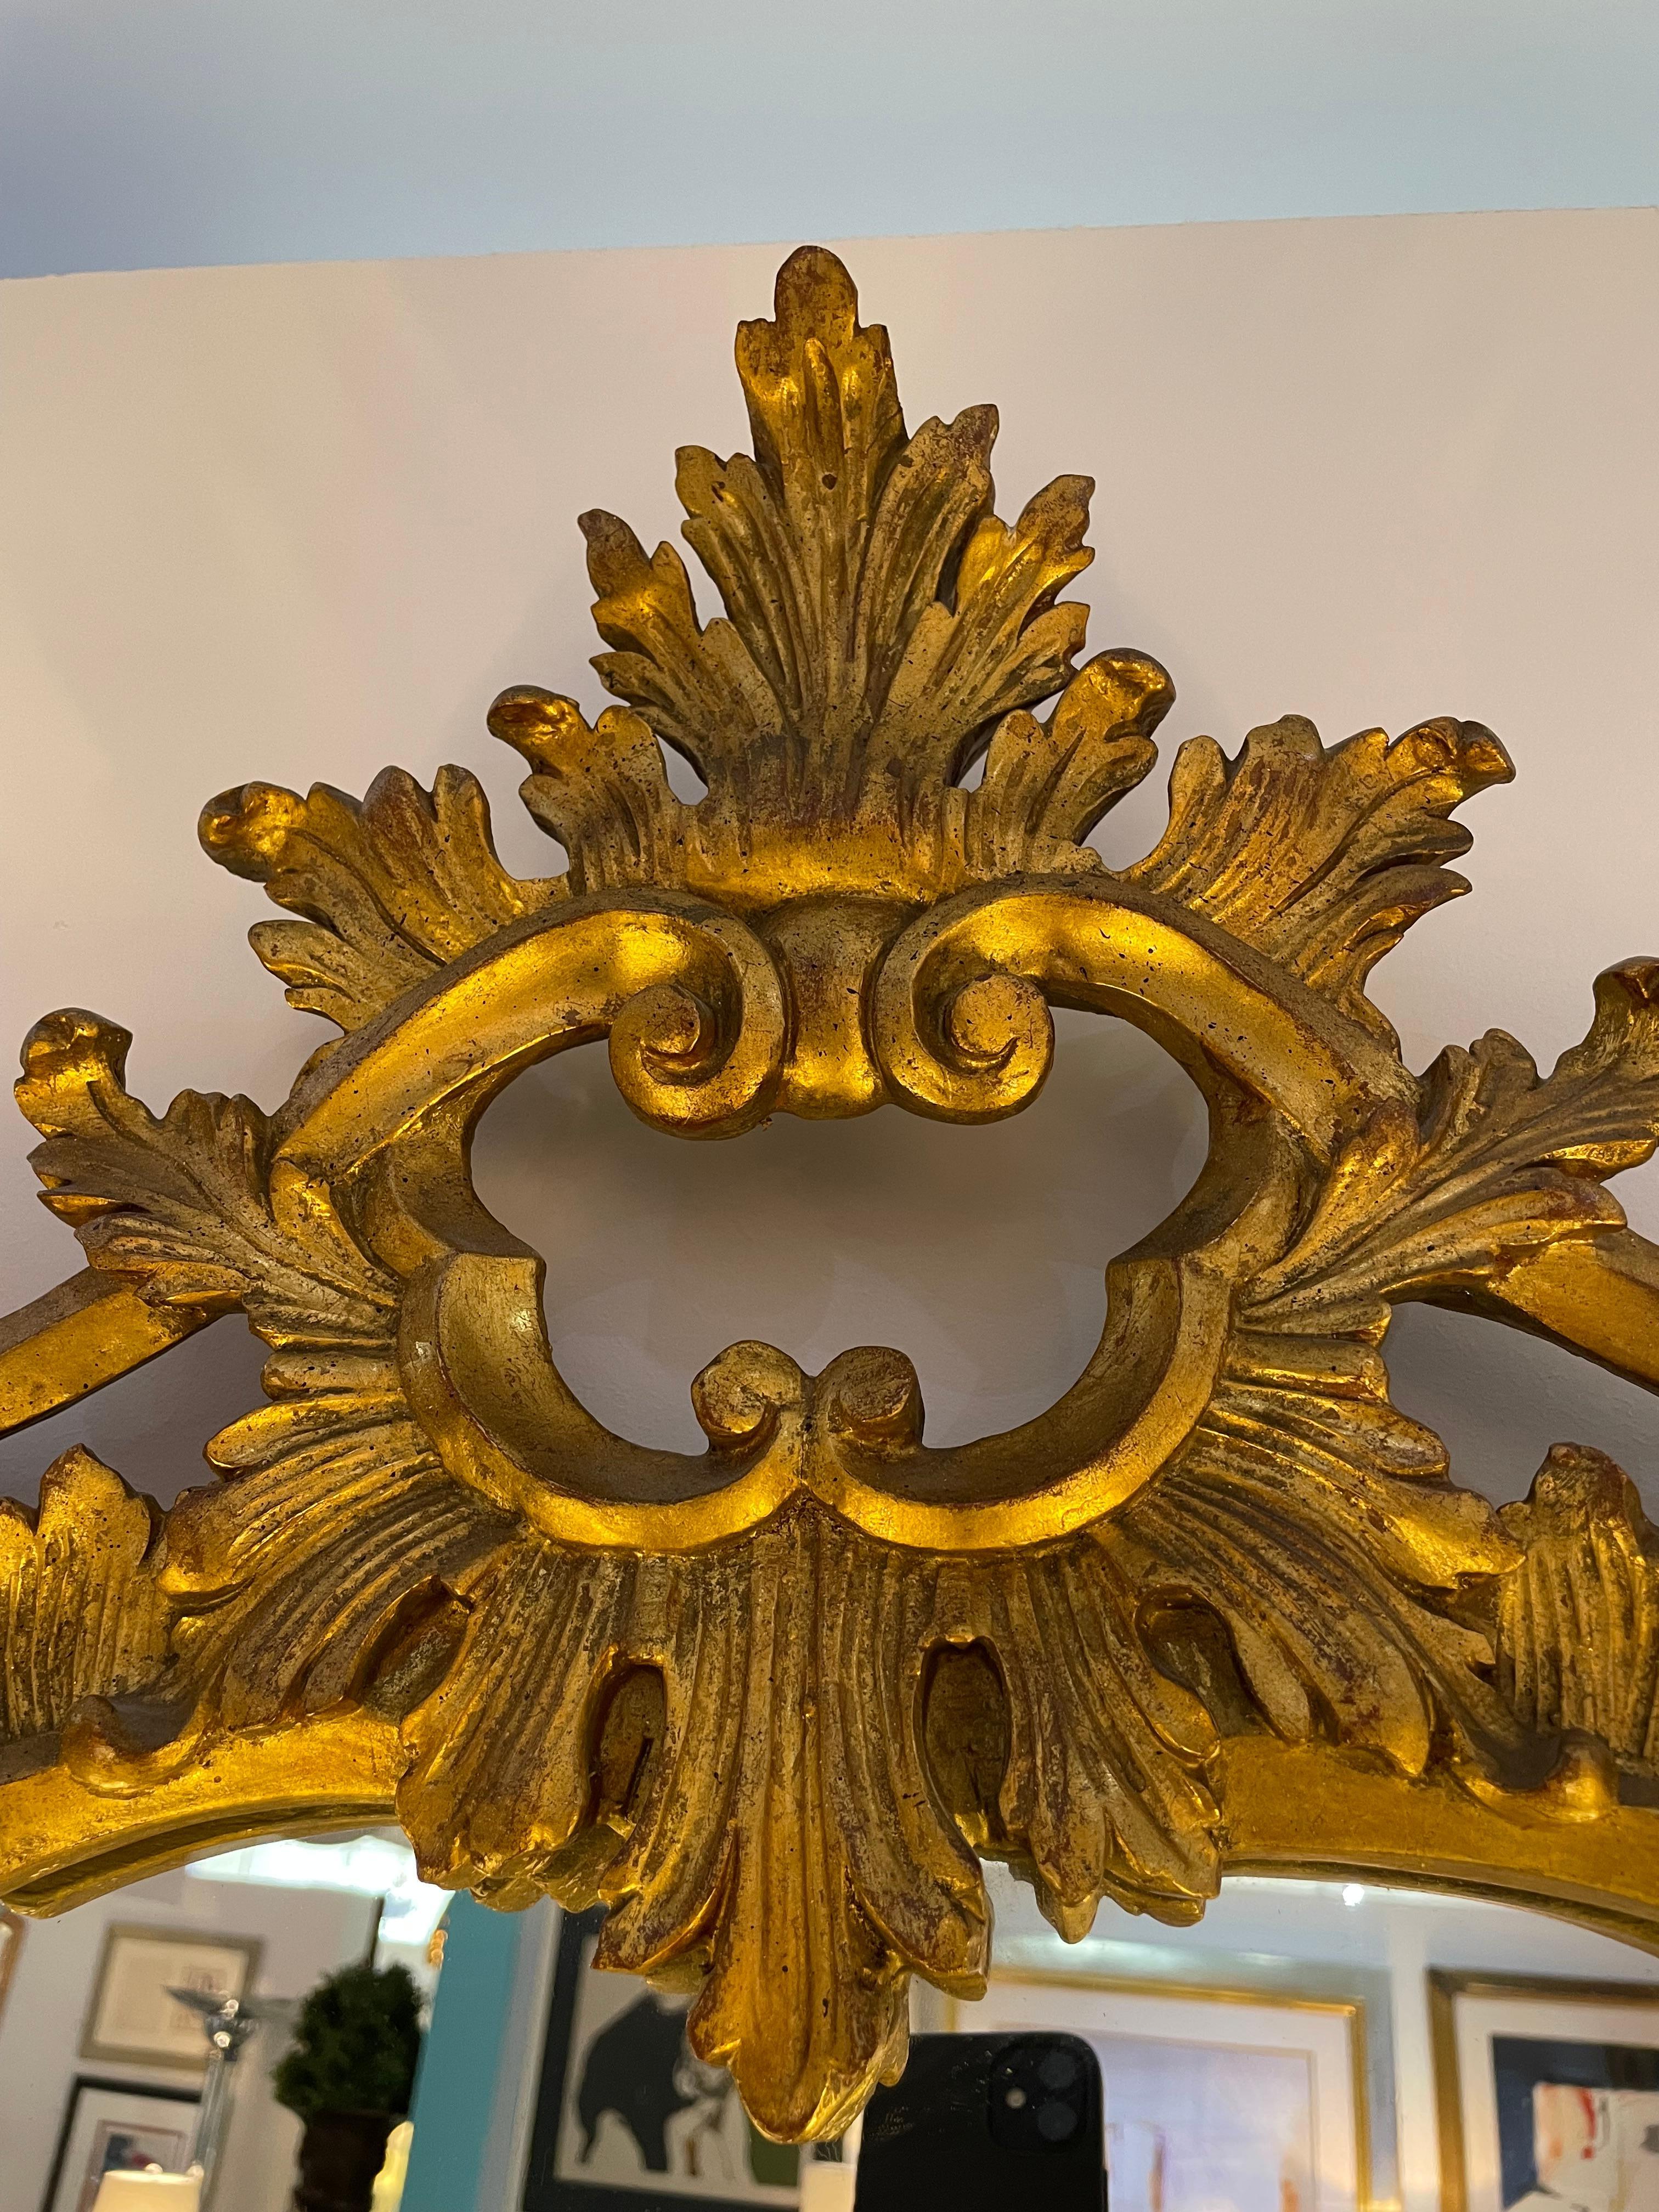 Cet élégant et chic miroir de style Louis XV, sculpté à la main, date des années 1930 et a été créé en Italie.   

Note : Le cadre est fini dans une finition or antique et une parcelle dorée.

Note : Il semble y avoir une ancienne restauration de